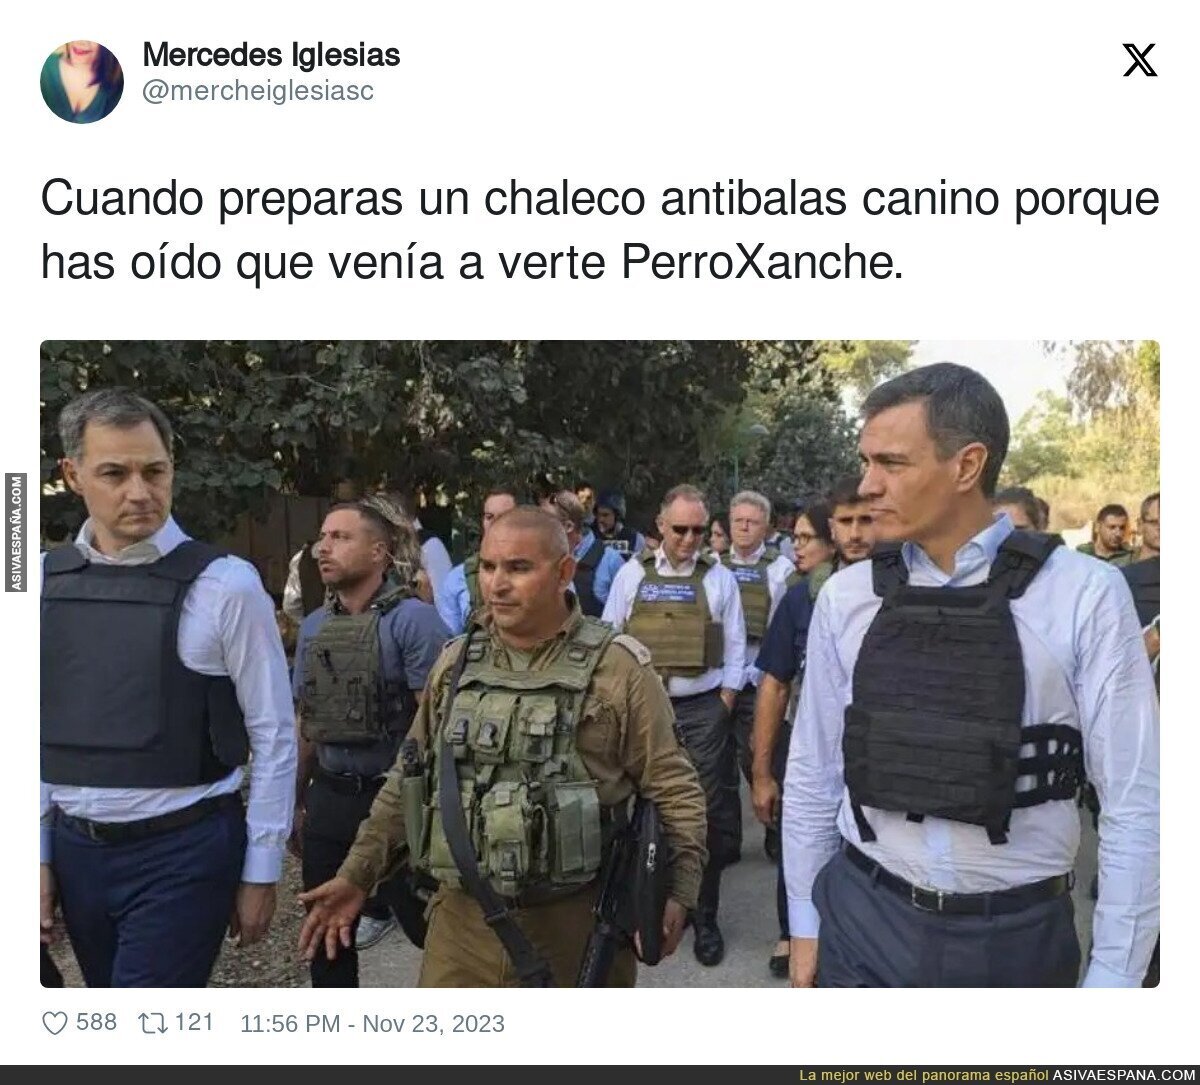 El curioso chaleco antibalas para Pedro Sánchez